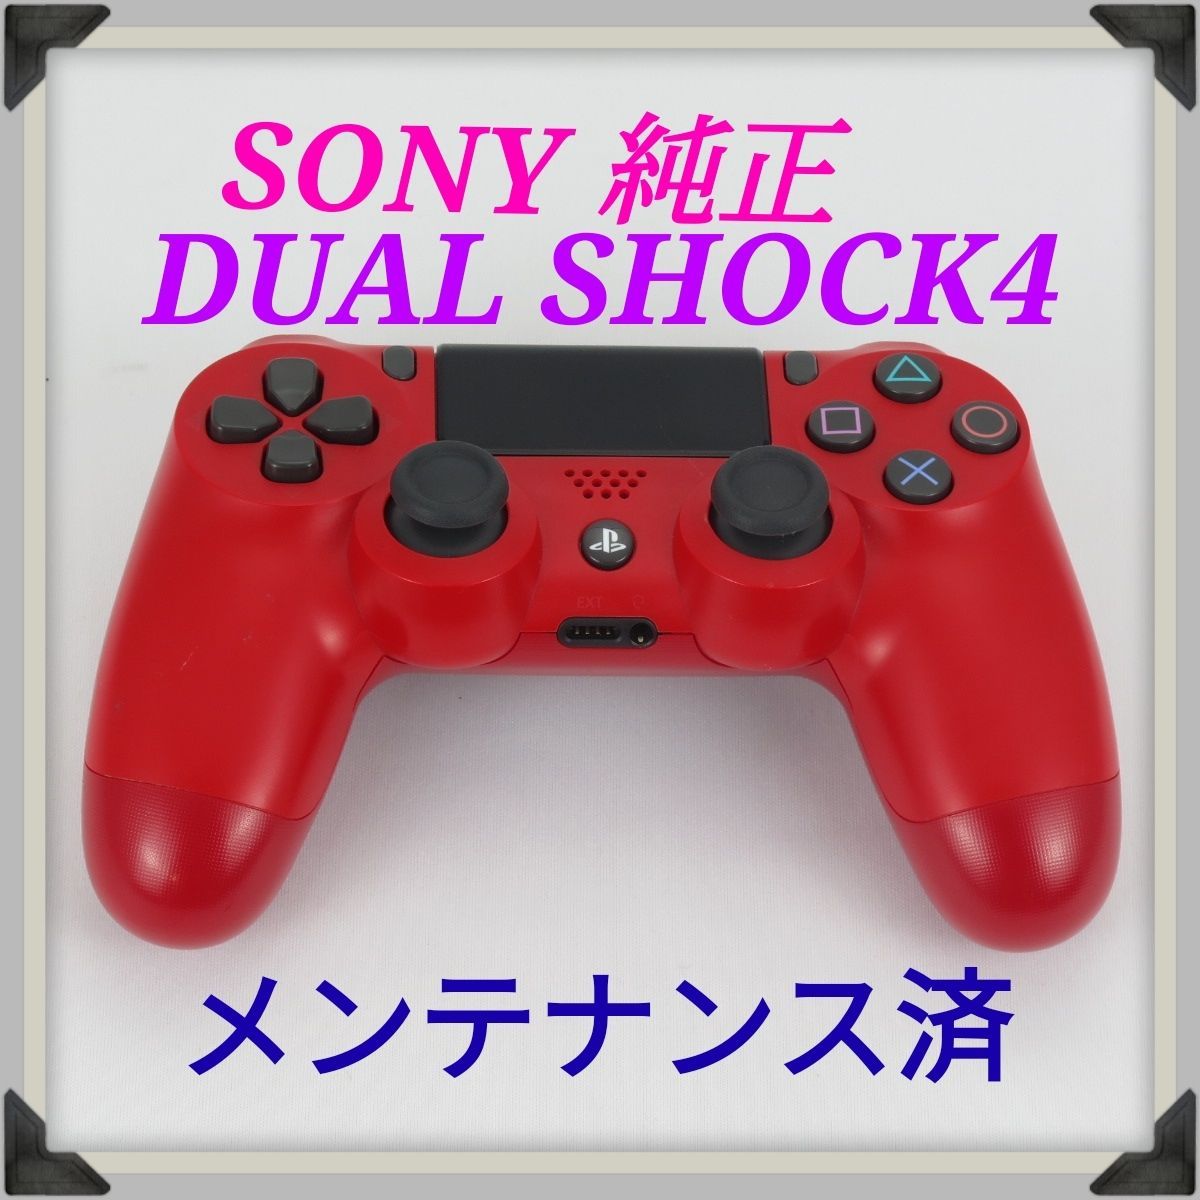 SONY純正PS4ワイヤレスコントローラーDUALSHOCK4 (マグマレッド ...